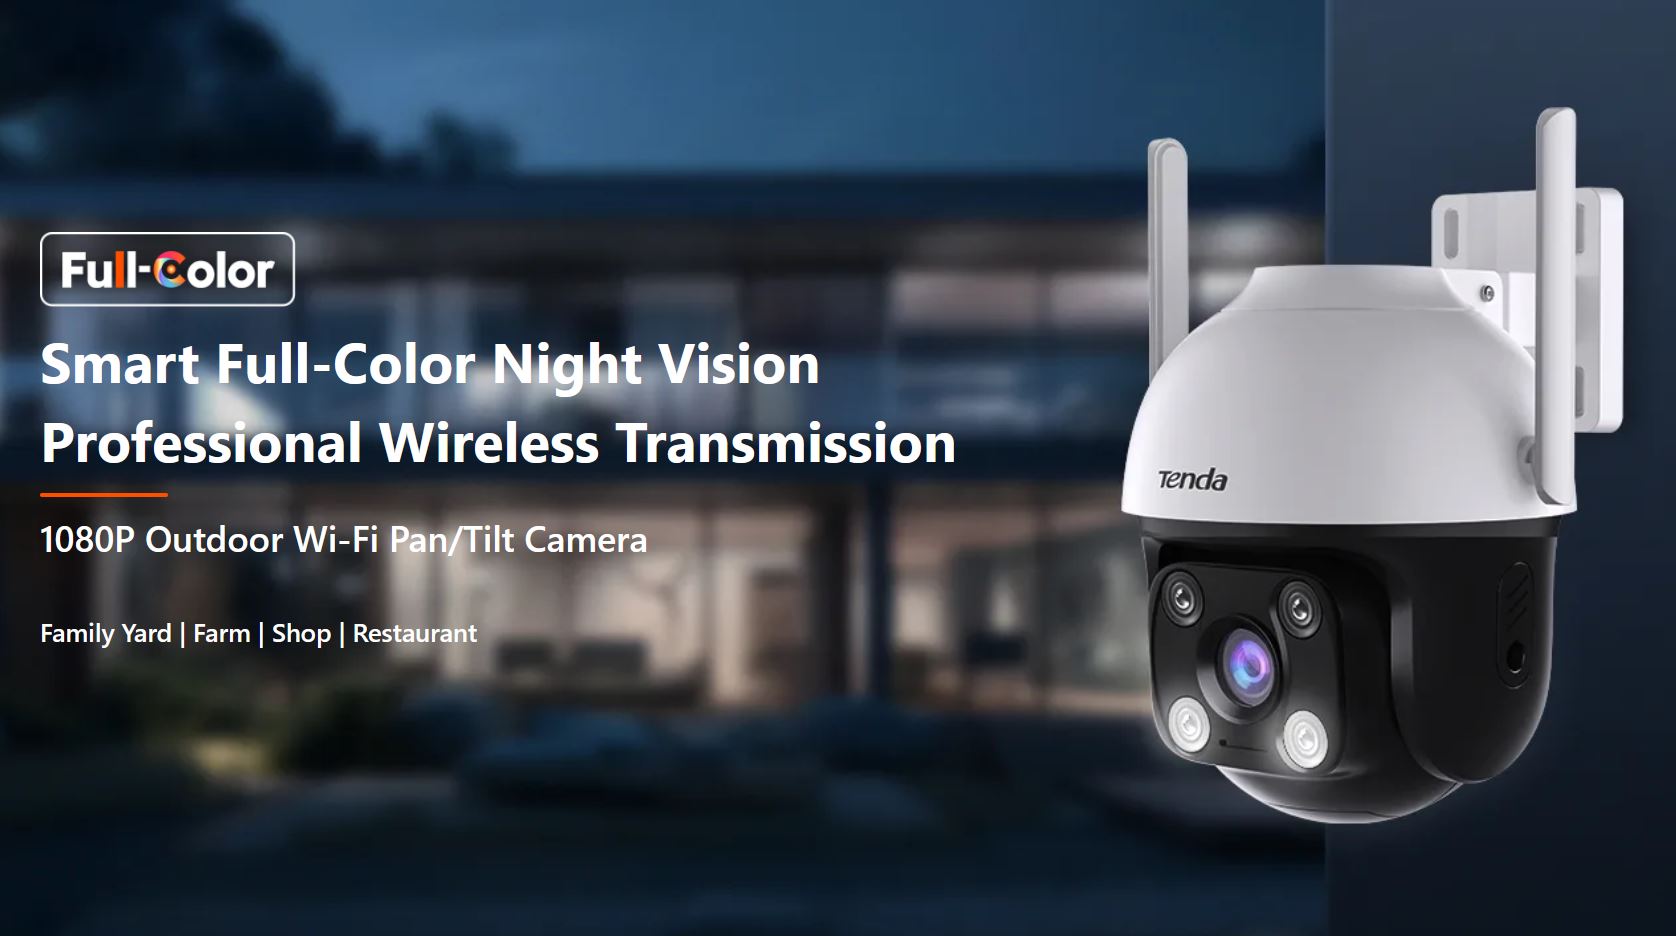 Obrázek Tenda RH3-WCA - Venkovní otočná IP65 Wi-Fi FullHD kamera, noční LED, audio, detekce pohybu, CZ app